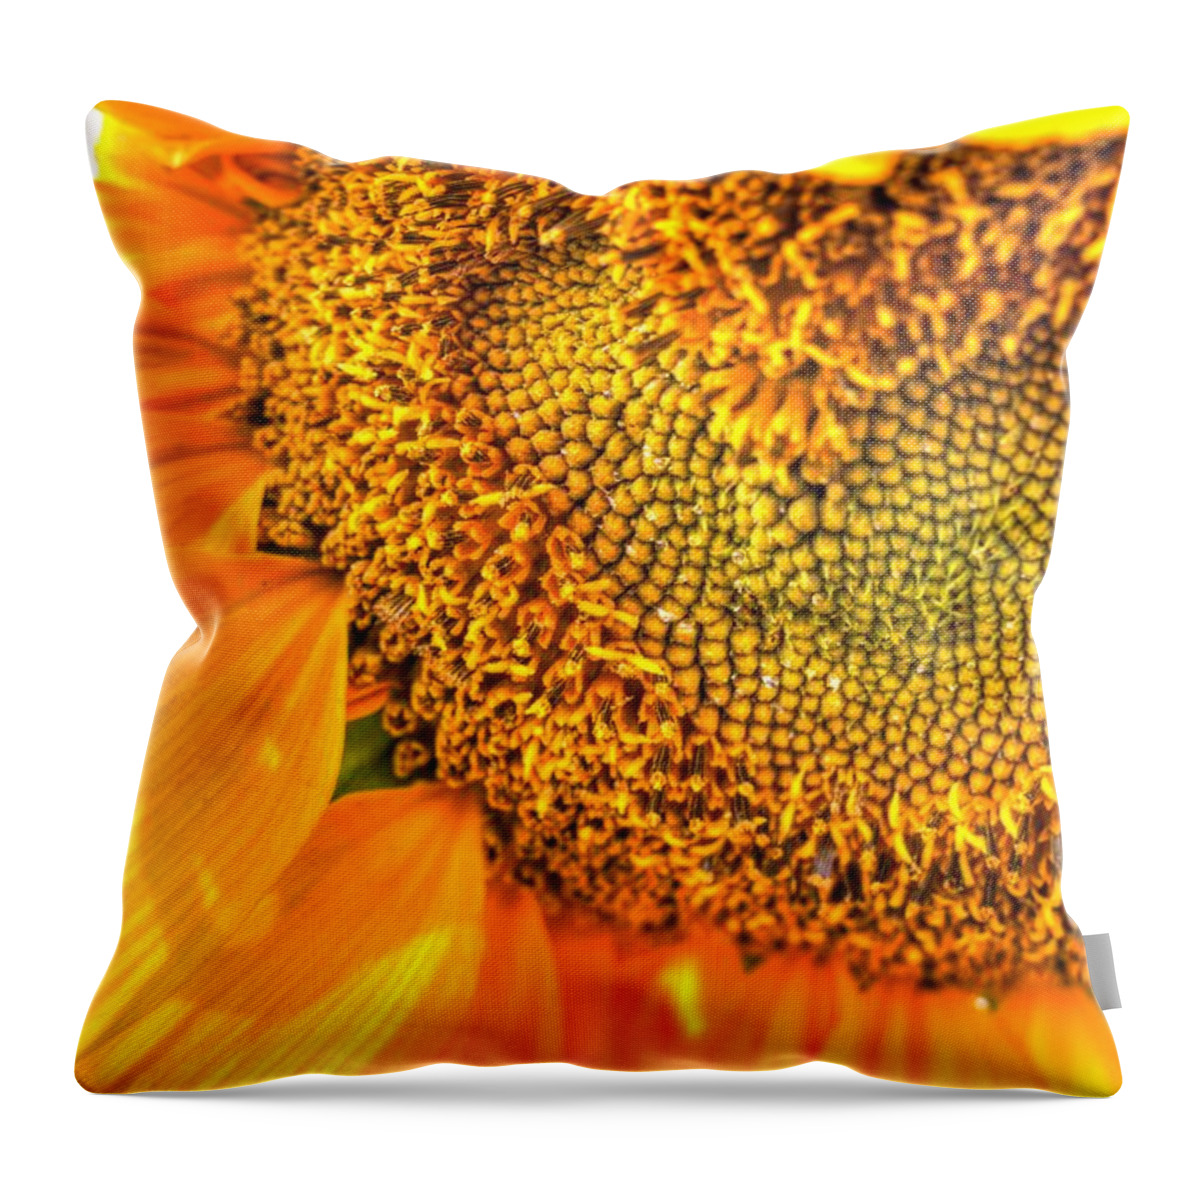 Sunflower Throw Pillow featuring the photograph Heart-felt Sunflower by Scott Carlton